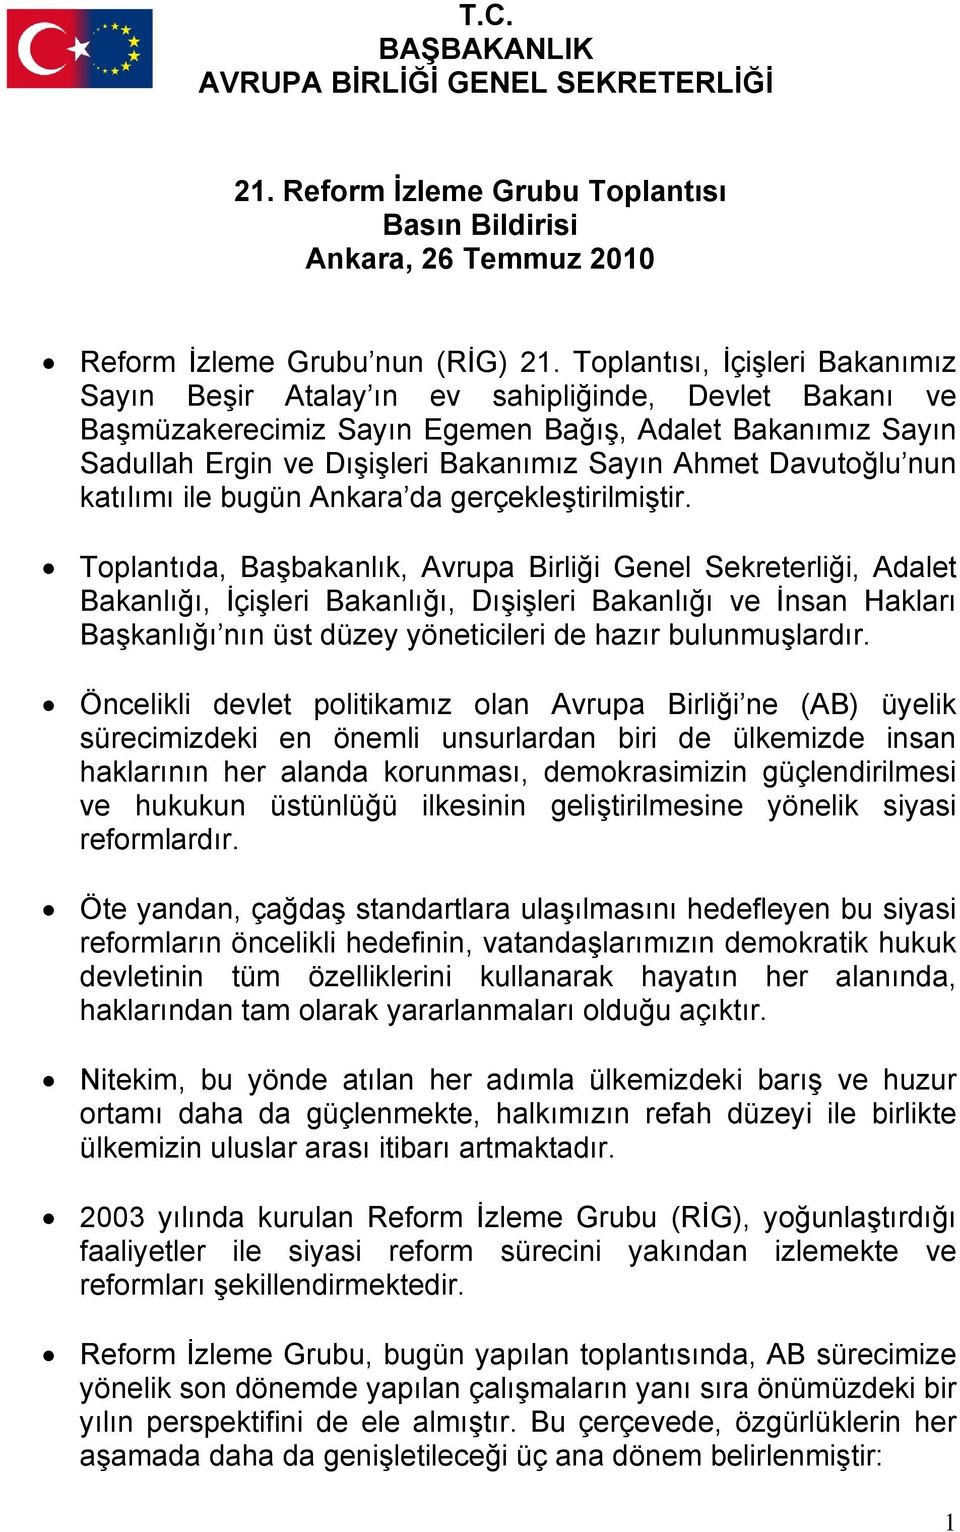 Davutoğlu nun katılımı ile bugün Ankara da gerçekleştirilmiştir.